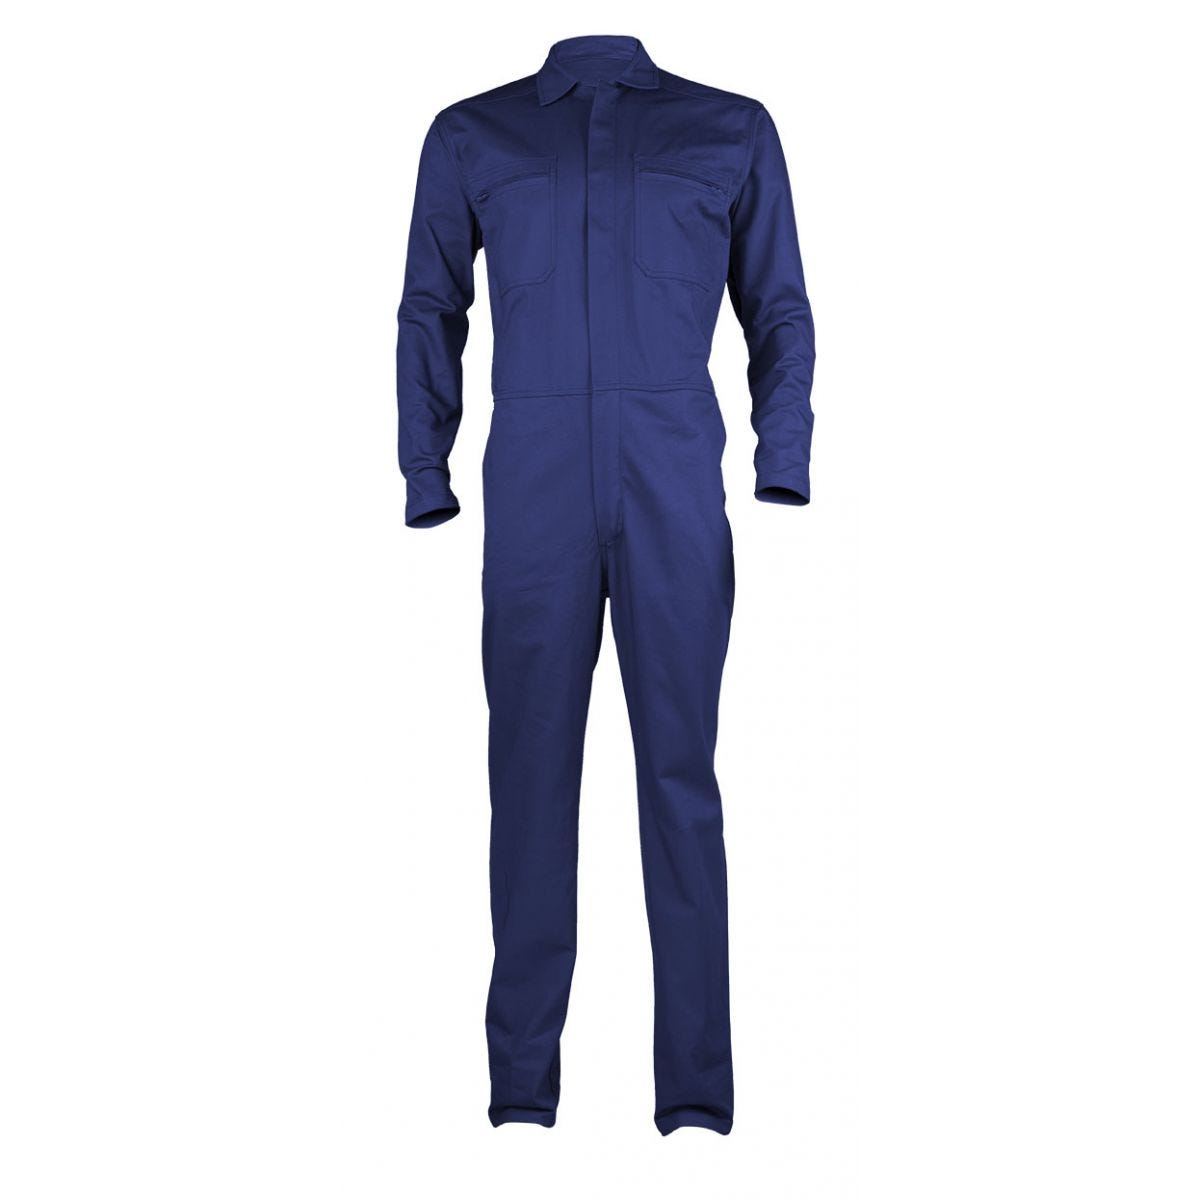 PARTNER Combinaison bleu royal, 100% coton, 280g/m² - COVERGUARD - Taille M 0